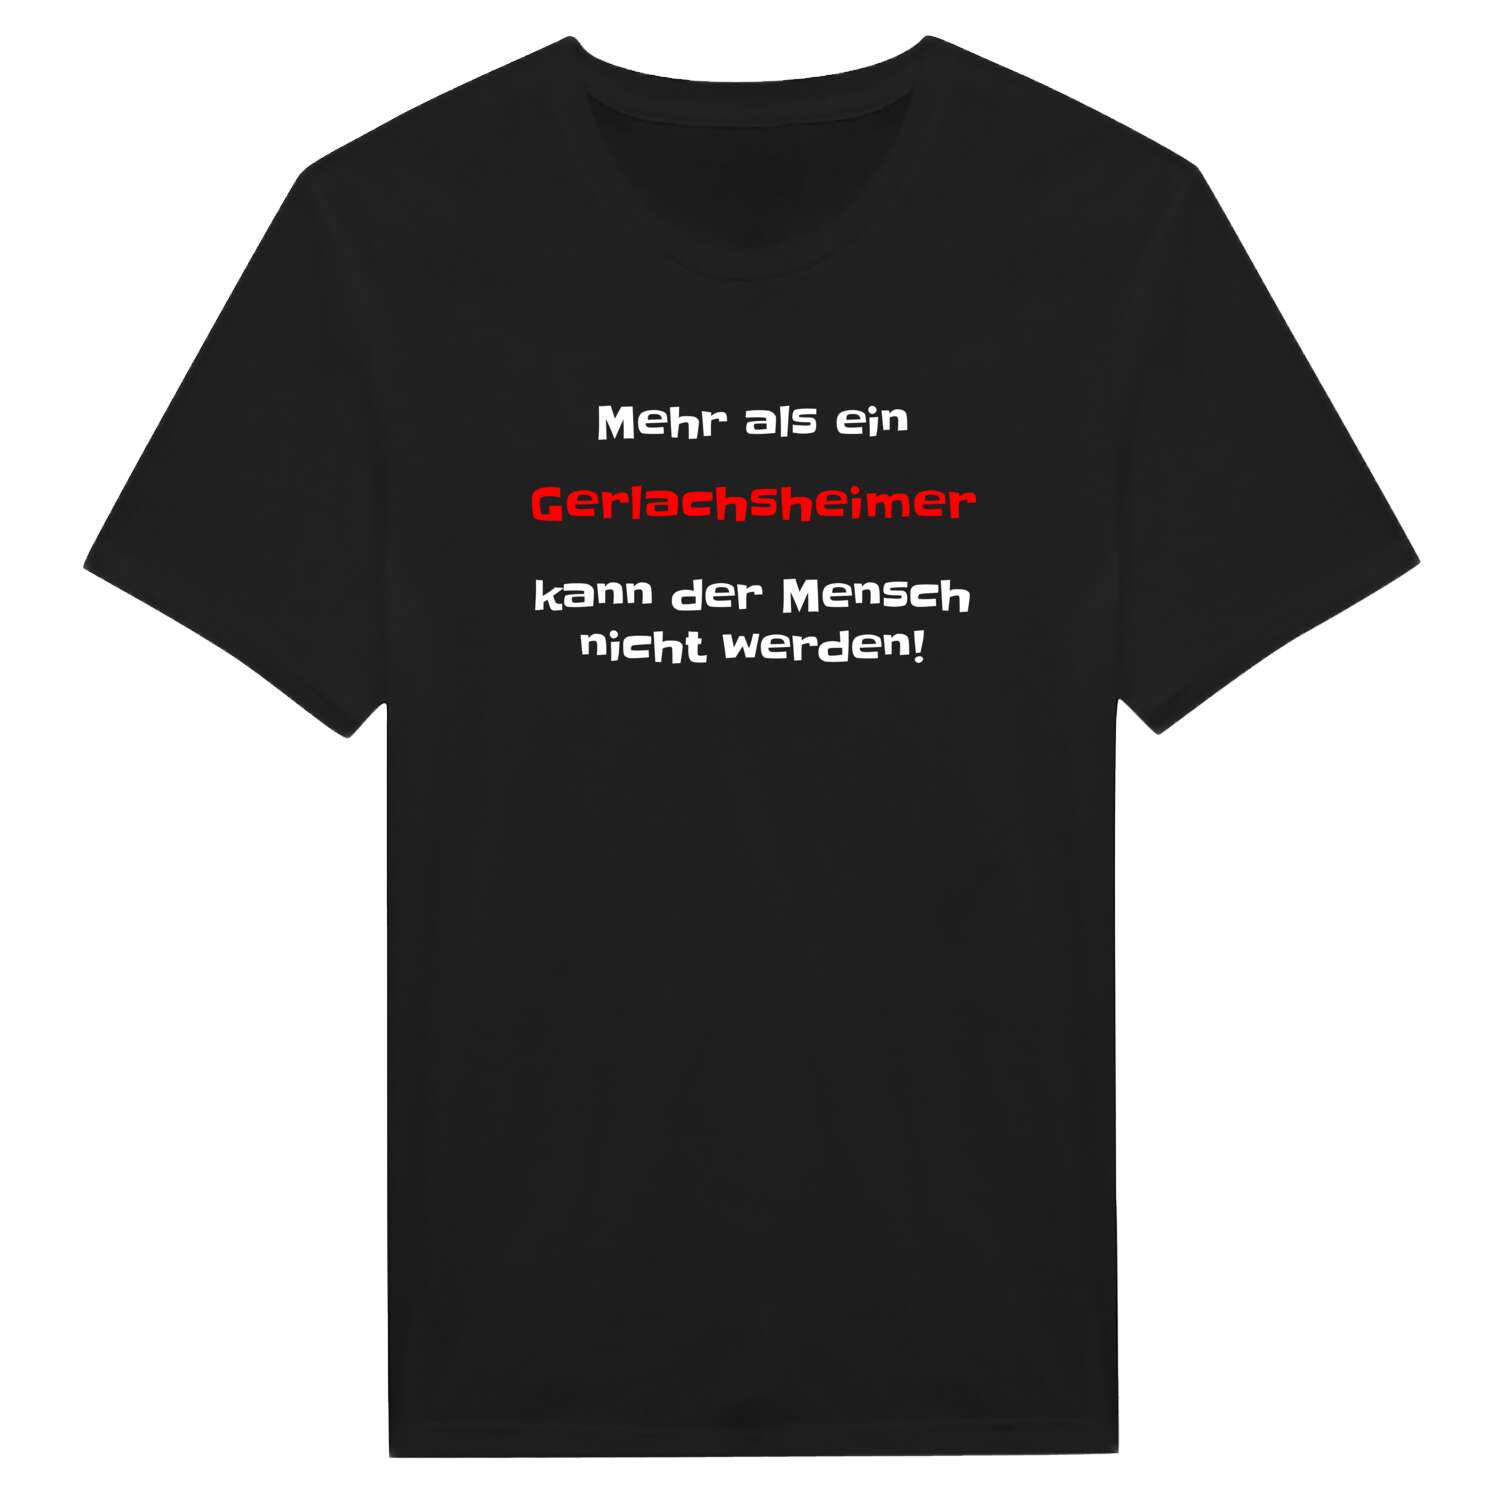 Gerlachsheim T-Shirt »Mehr als ein«